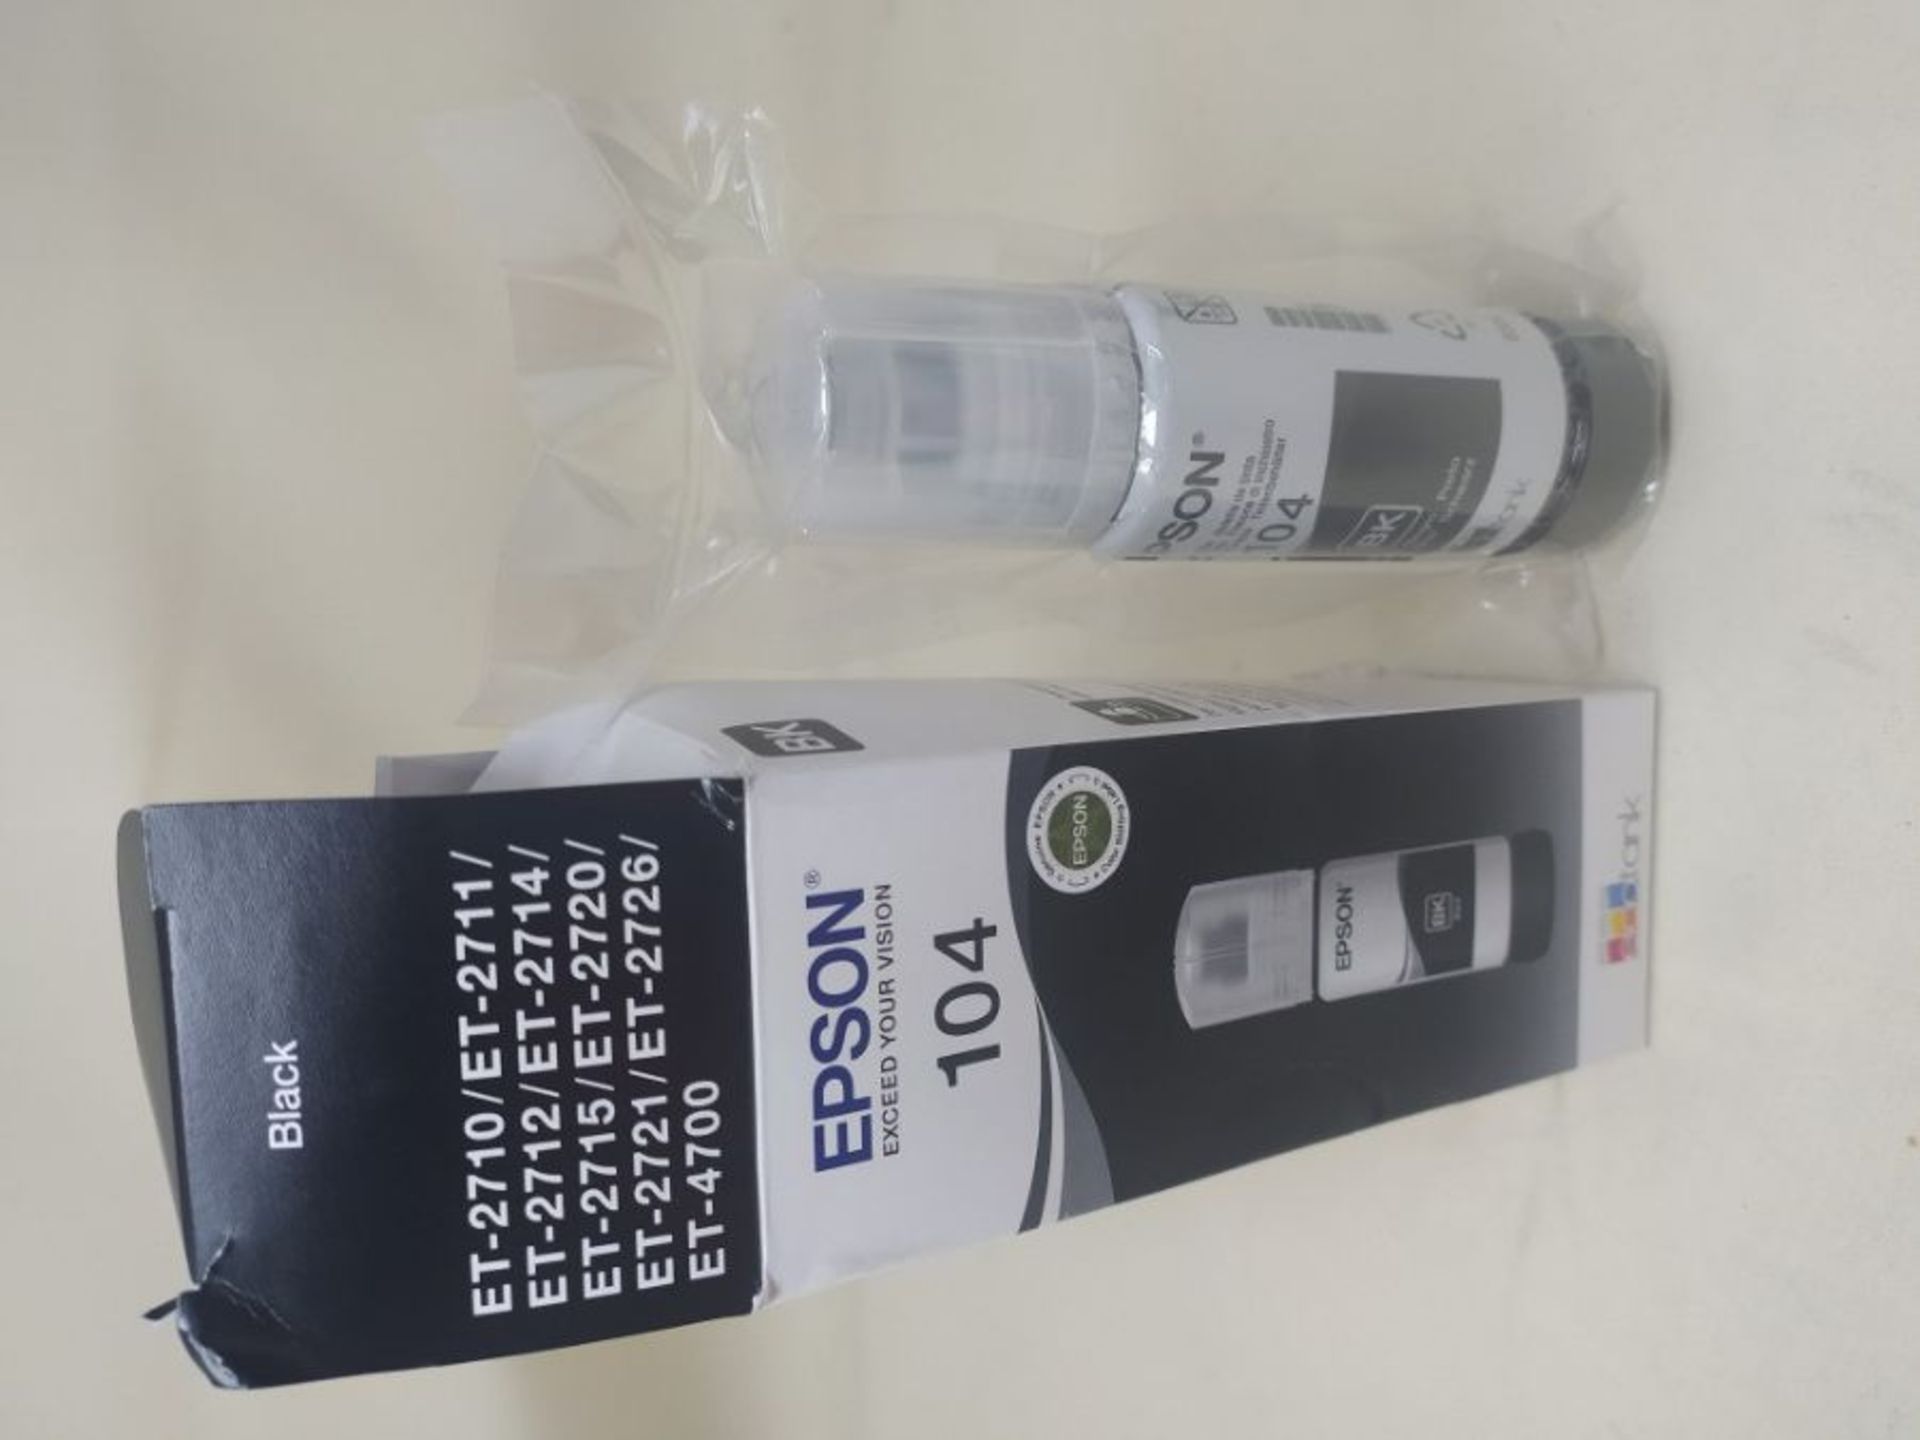 Epson EcoTank 104 Black Genuine Ink Bottle, Amazon Dash Replenishment Ready - Image 2 of 2